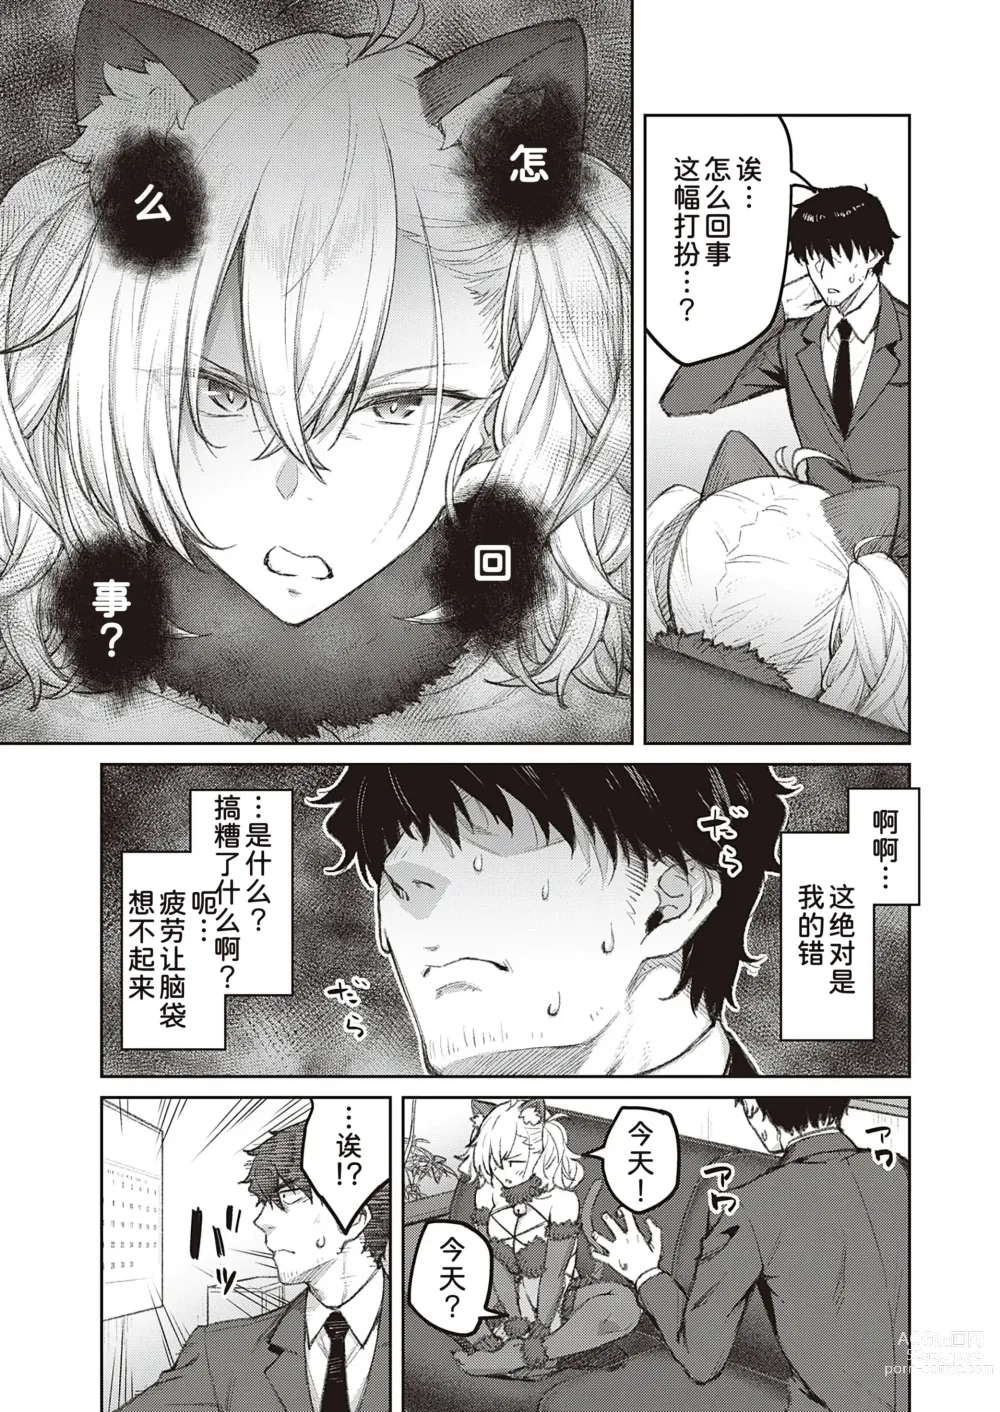 Page 4 of manga Tsugi wa Kou wa Ikanai kara na!3